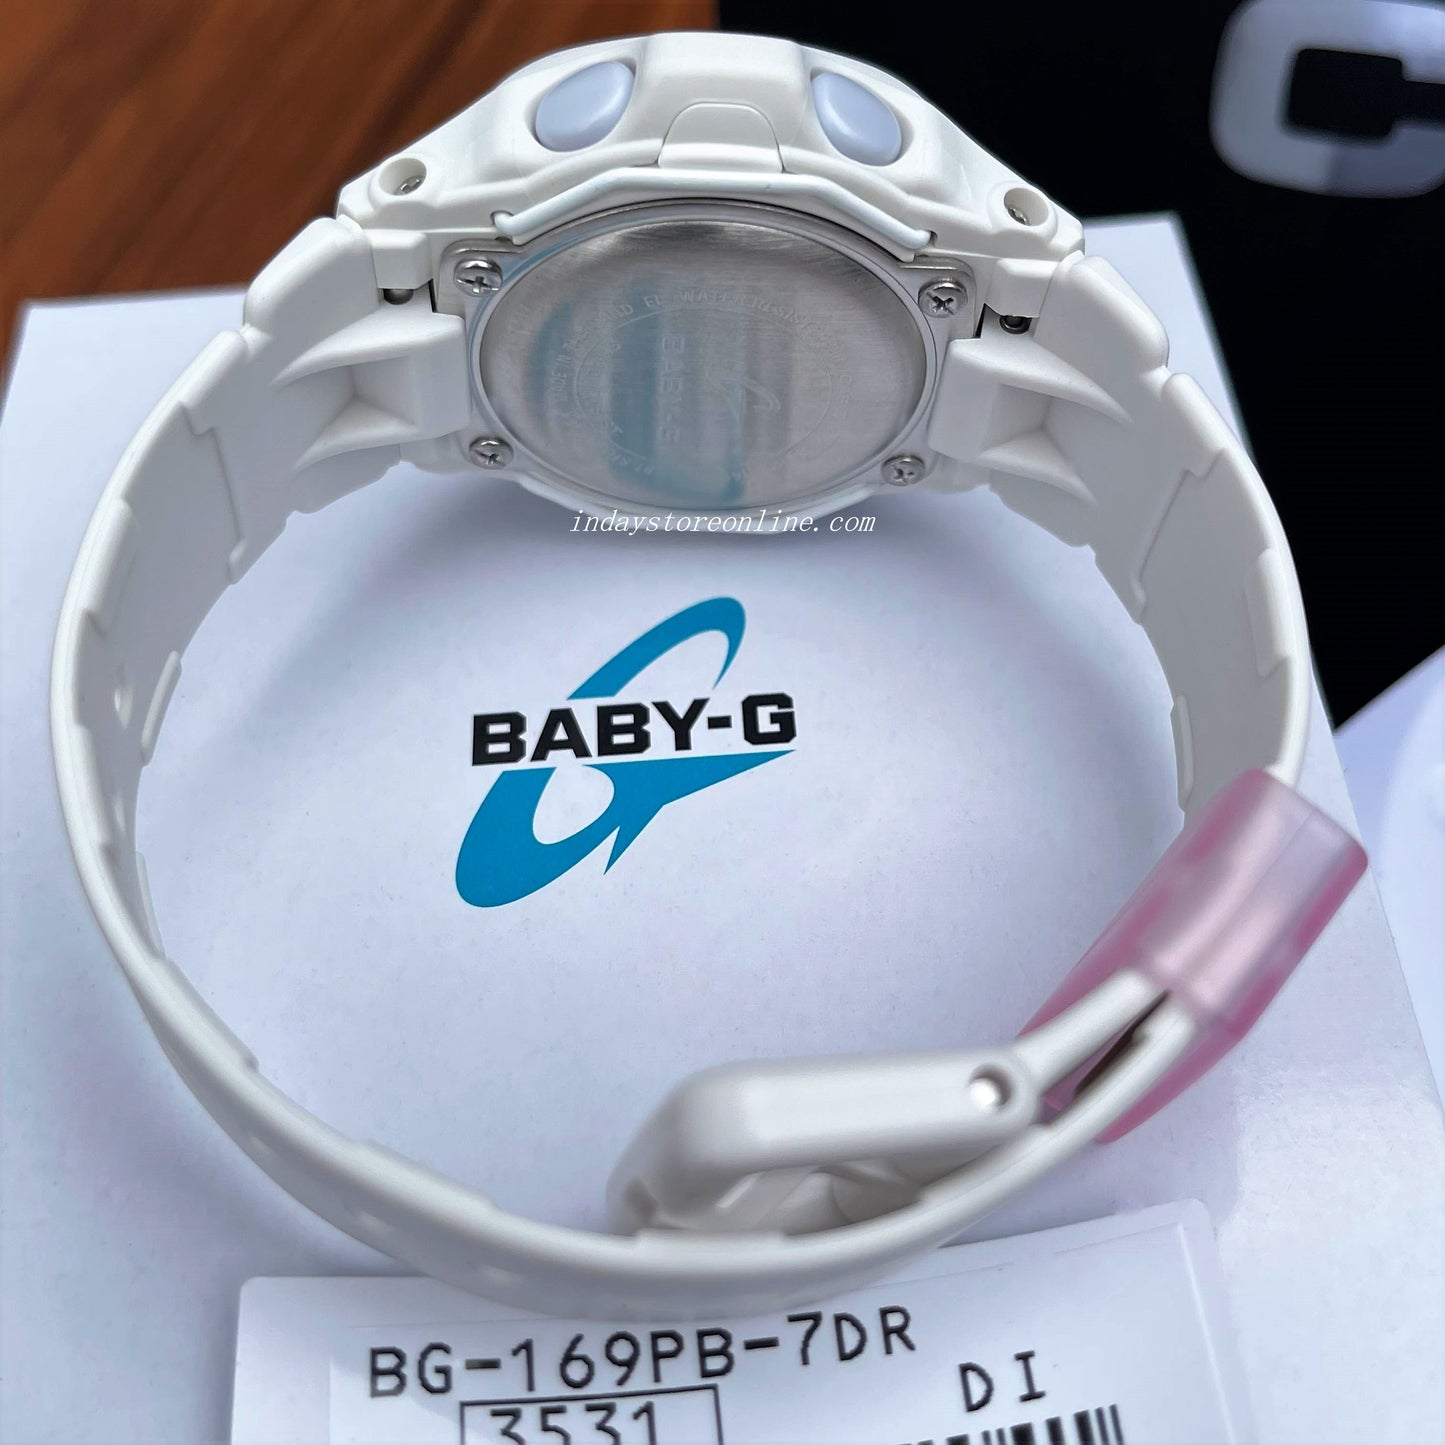 Casio Baby-G Women's Watch BG-169PB-7